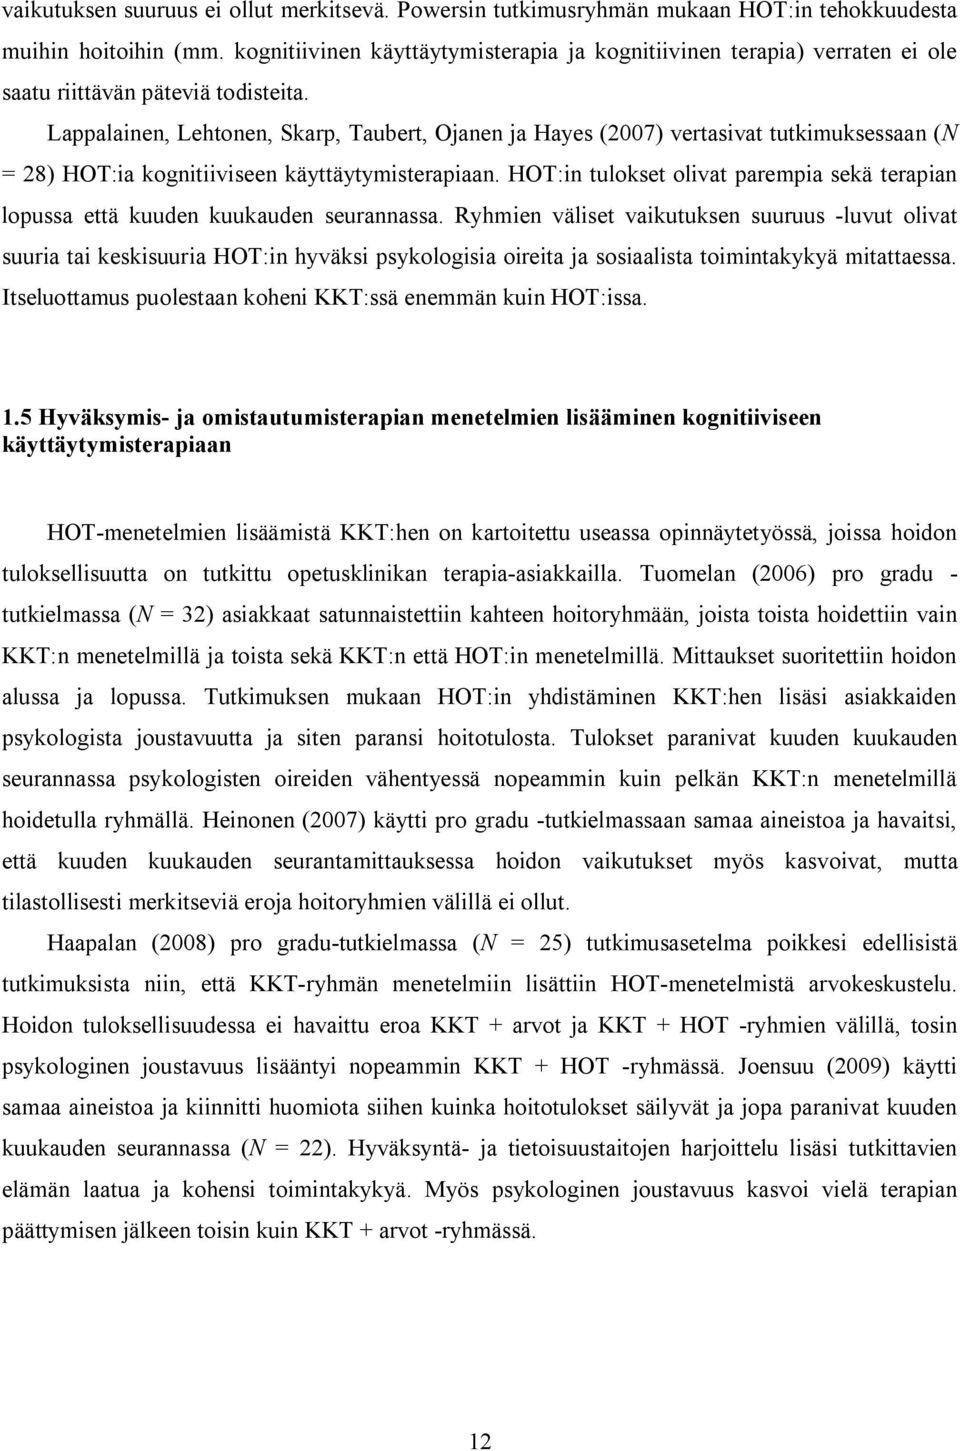 Lappalainen, Lehtonen, Skarp, Taubert, Ojanen ja Hayes (2007) vertasivat tutkimuksessaan (N = 28) HOT:ia kognitiiviseen käyttäytymisterapiaan.